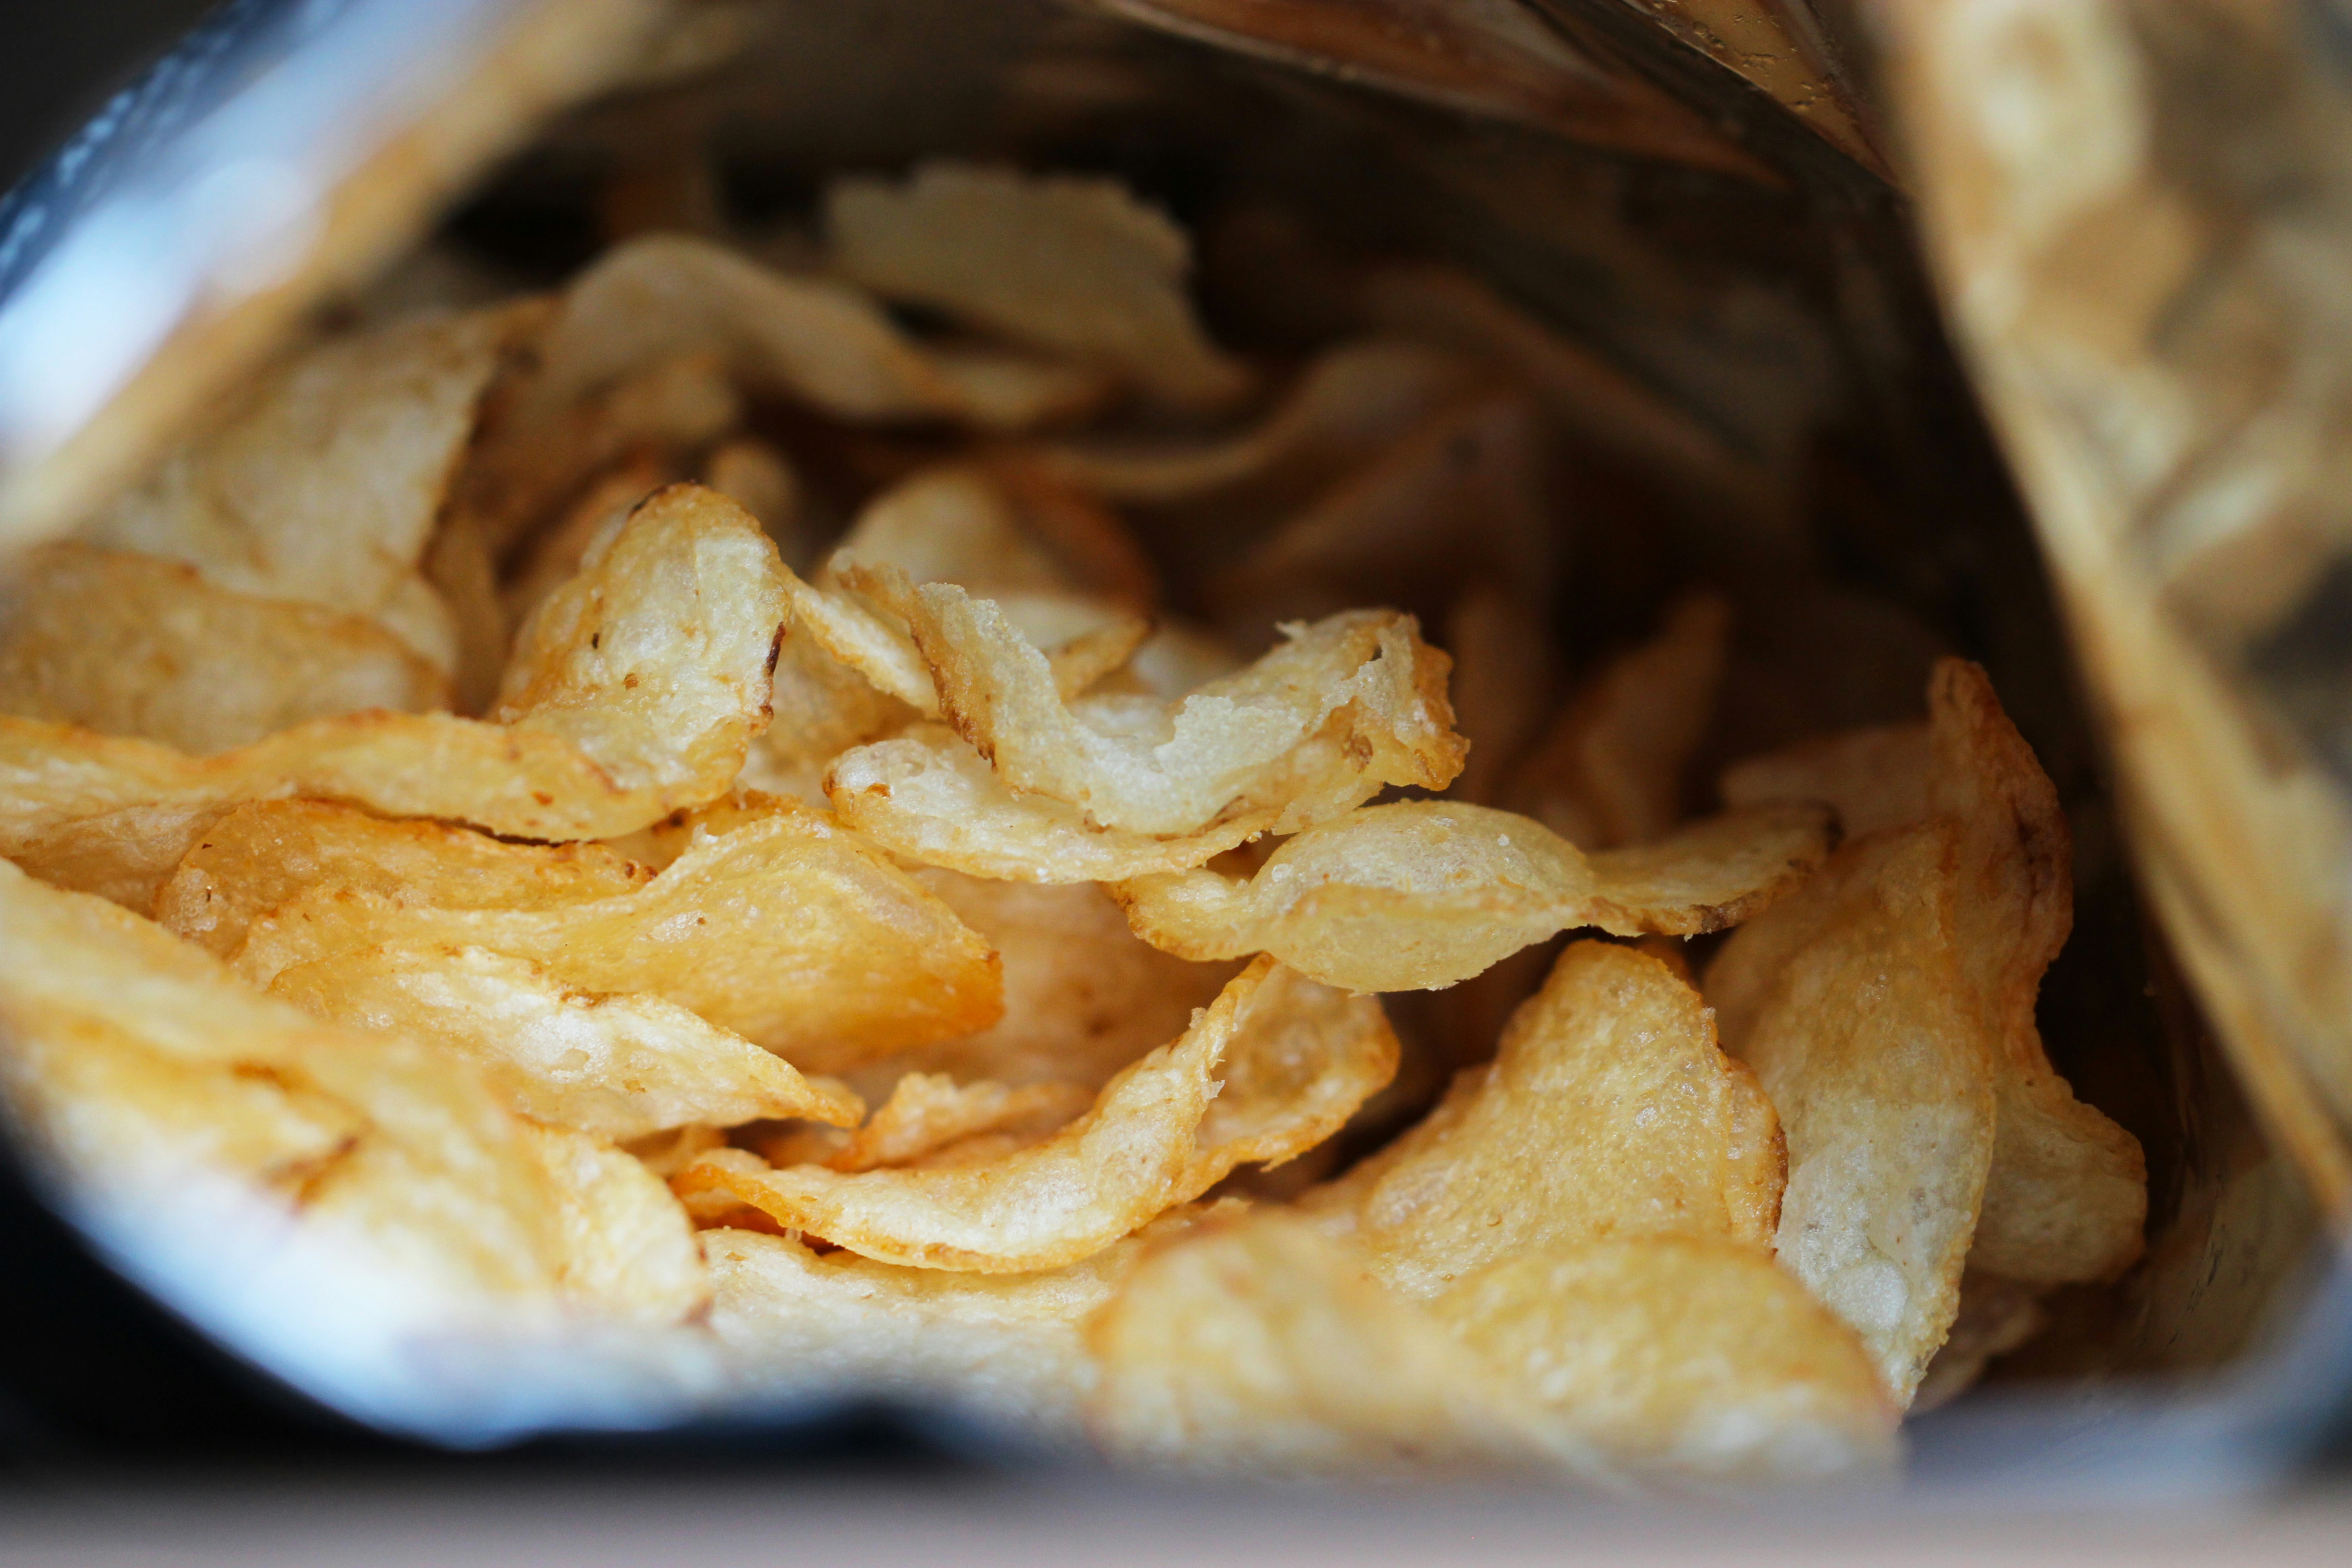 Vind jij meeste chips ook minder lekker geworden? Dit is de reden waarom